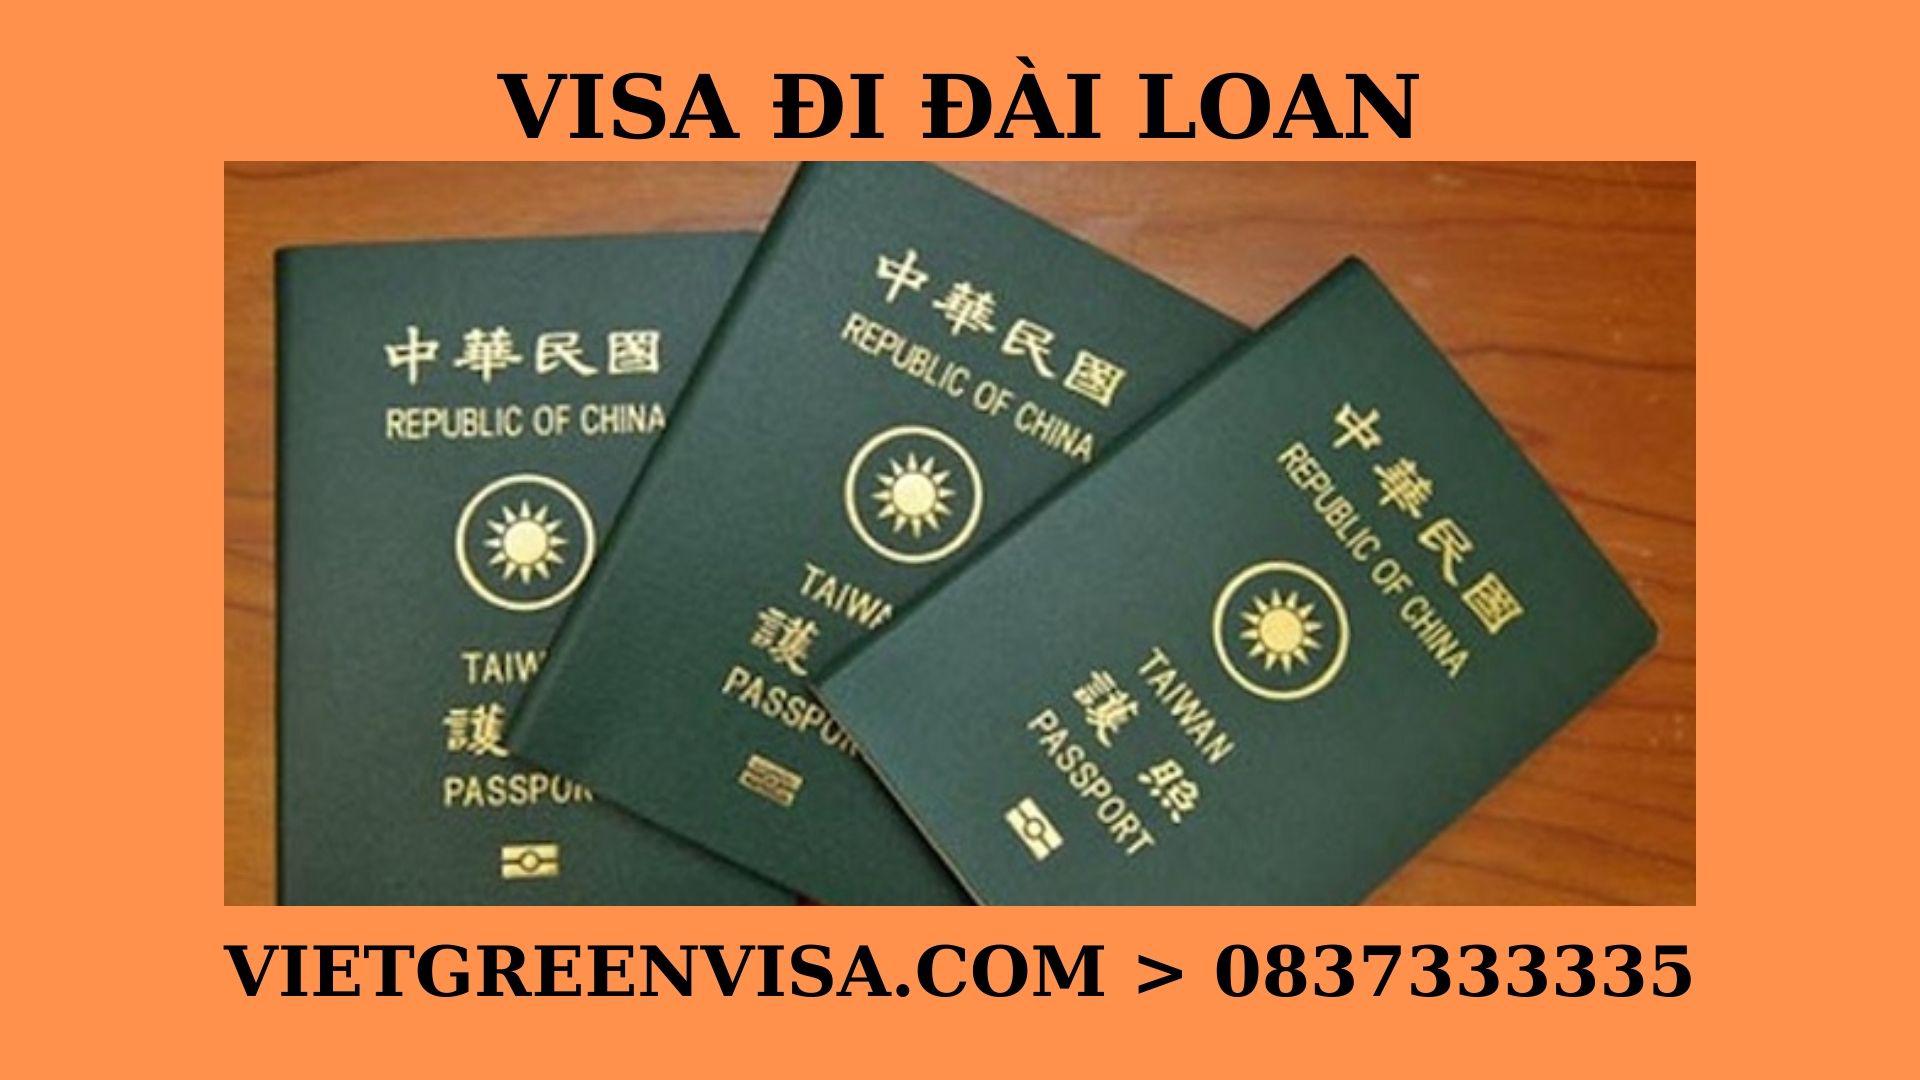 Dịch vụ xin visa công tác Đài Loan uy tín, Làm visa công tác đi Đài Loan giá rẻ , Tư vấn xin visa Đài Loan công tác, Thủ tục xin visa Đài Loan công tác